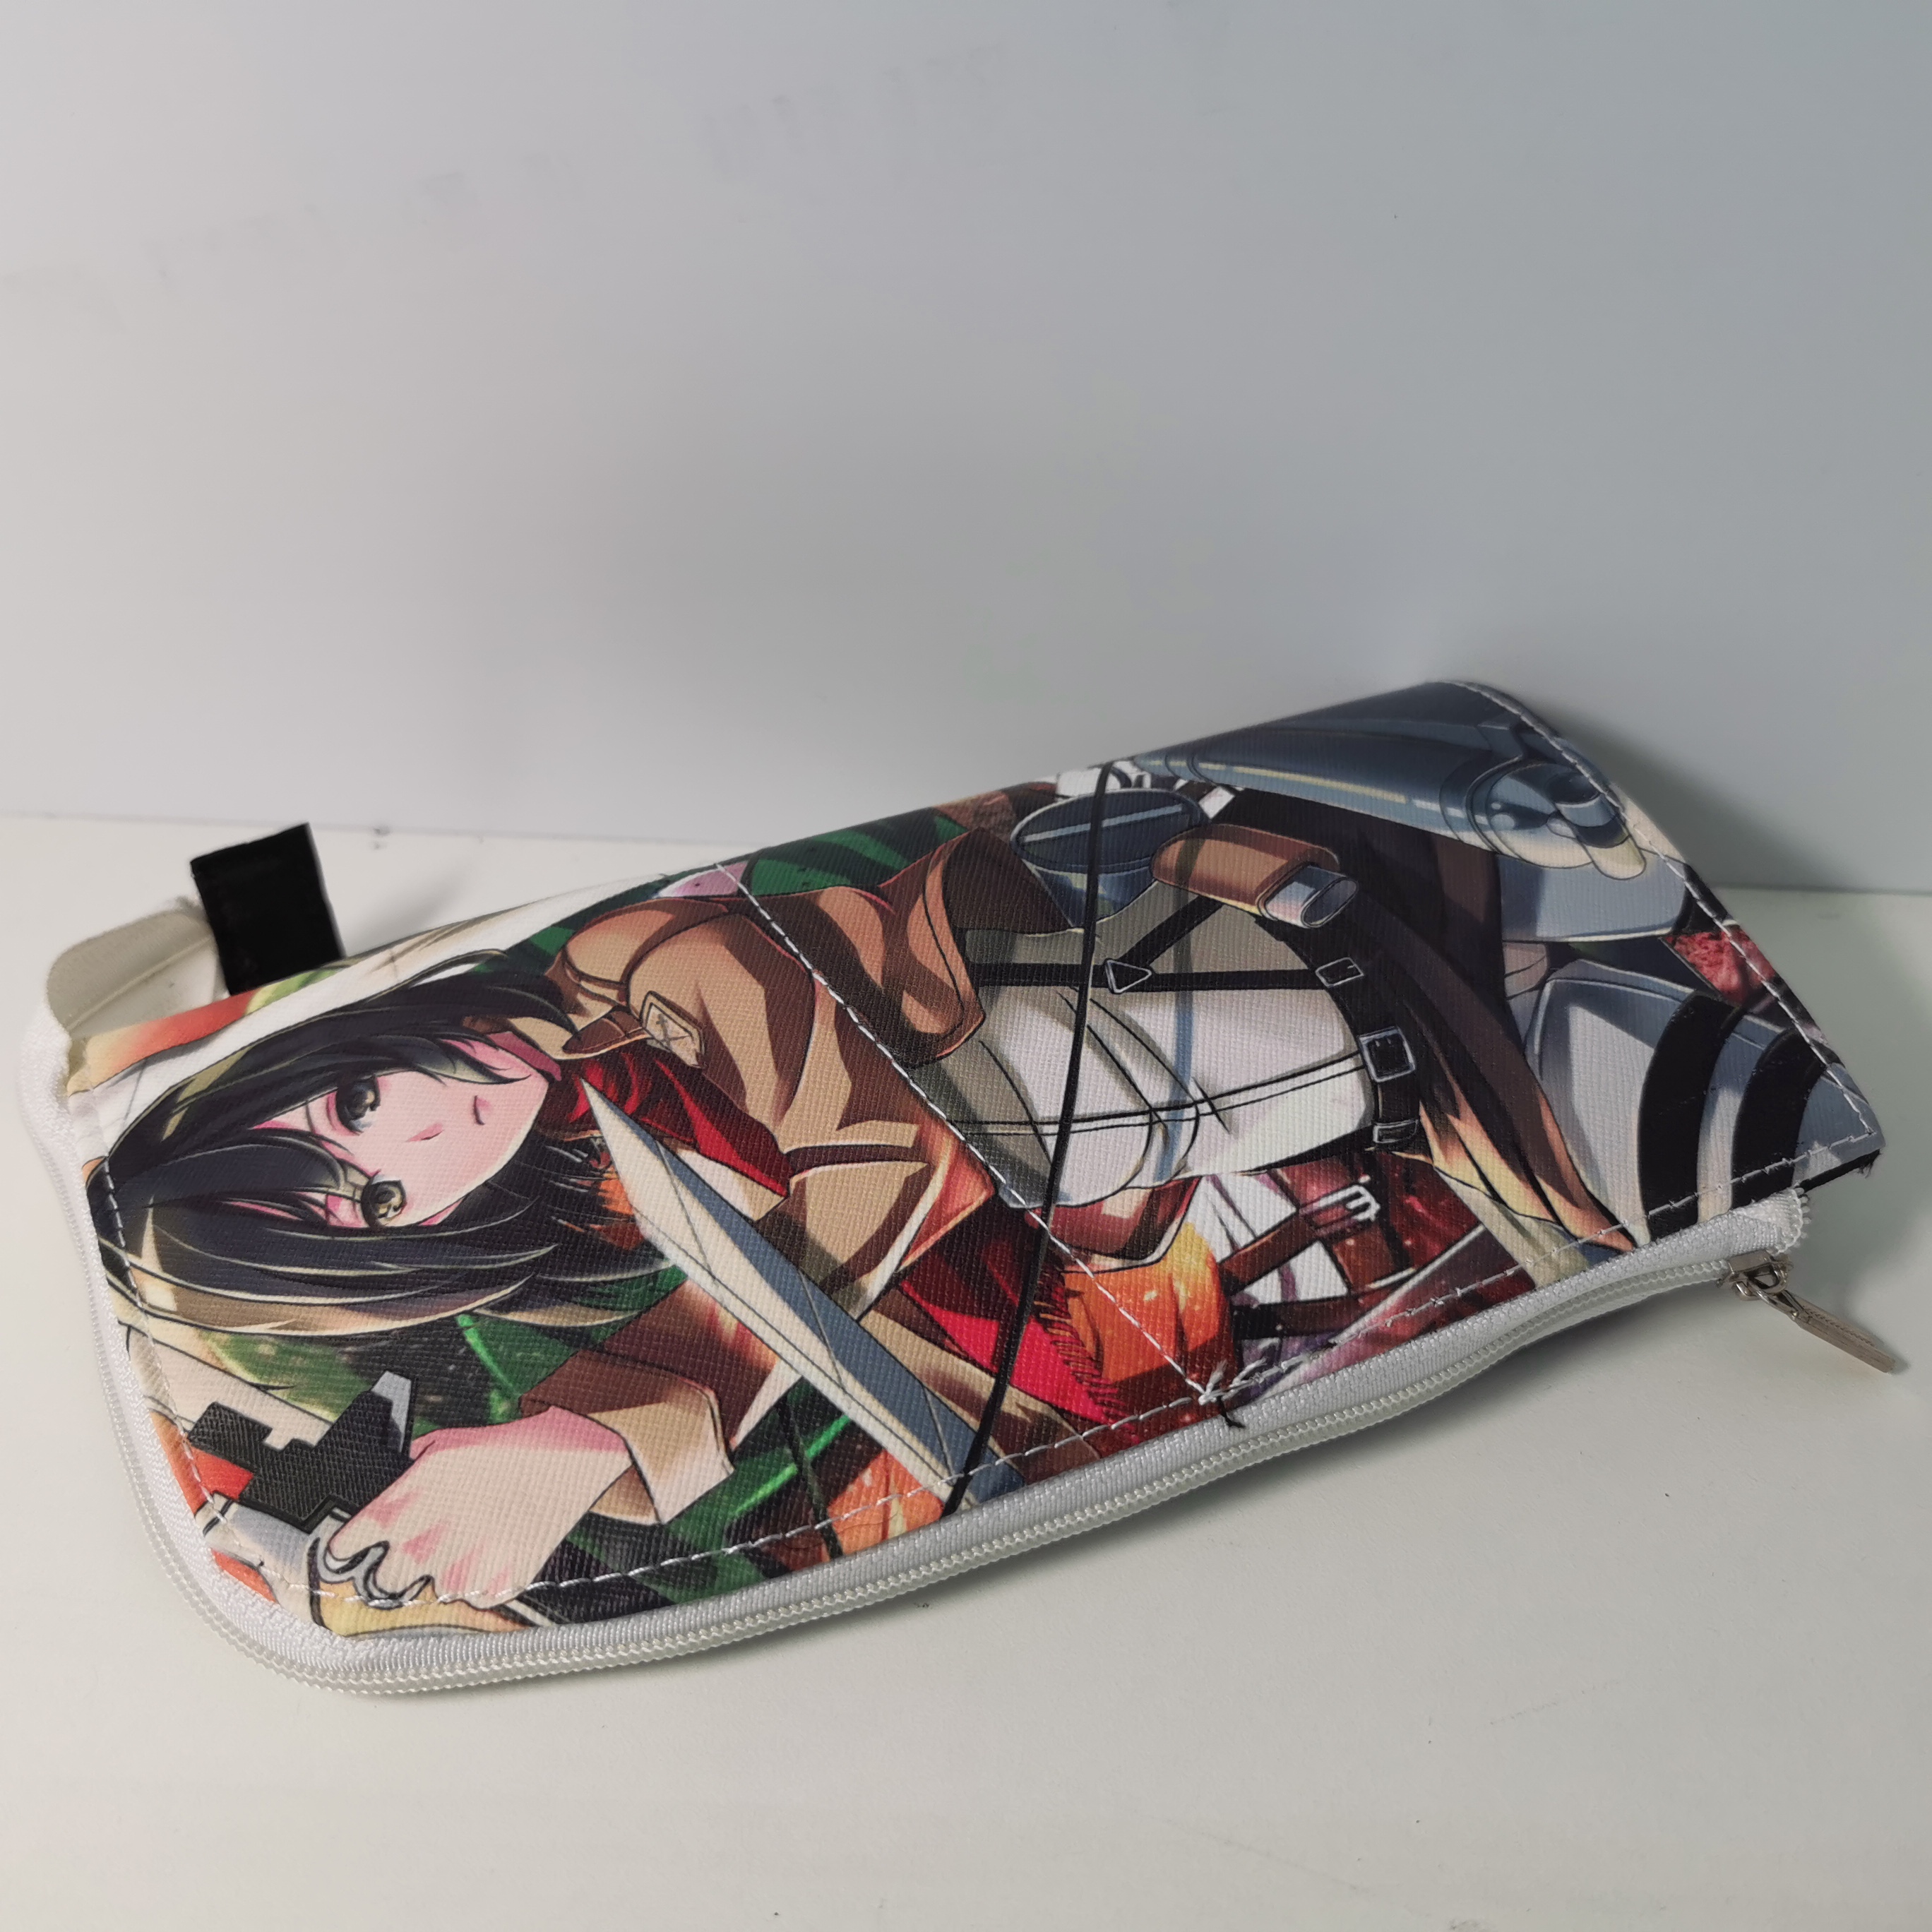 Hộp bút hình Attack on Titan Anime Pencil Bag